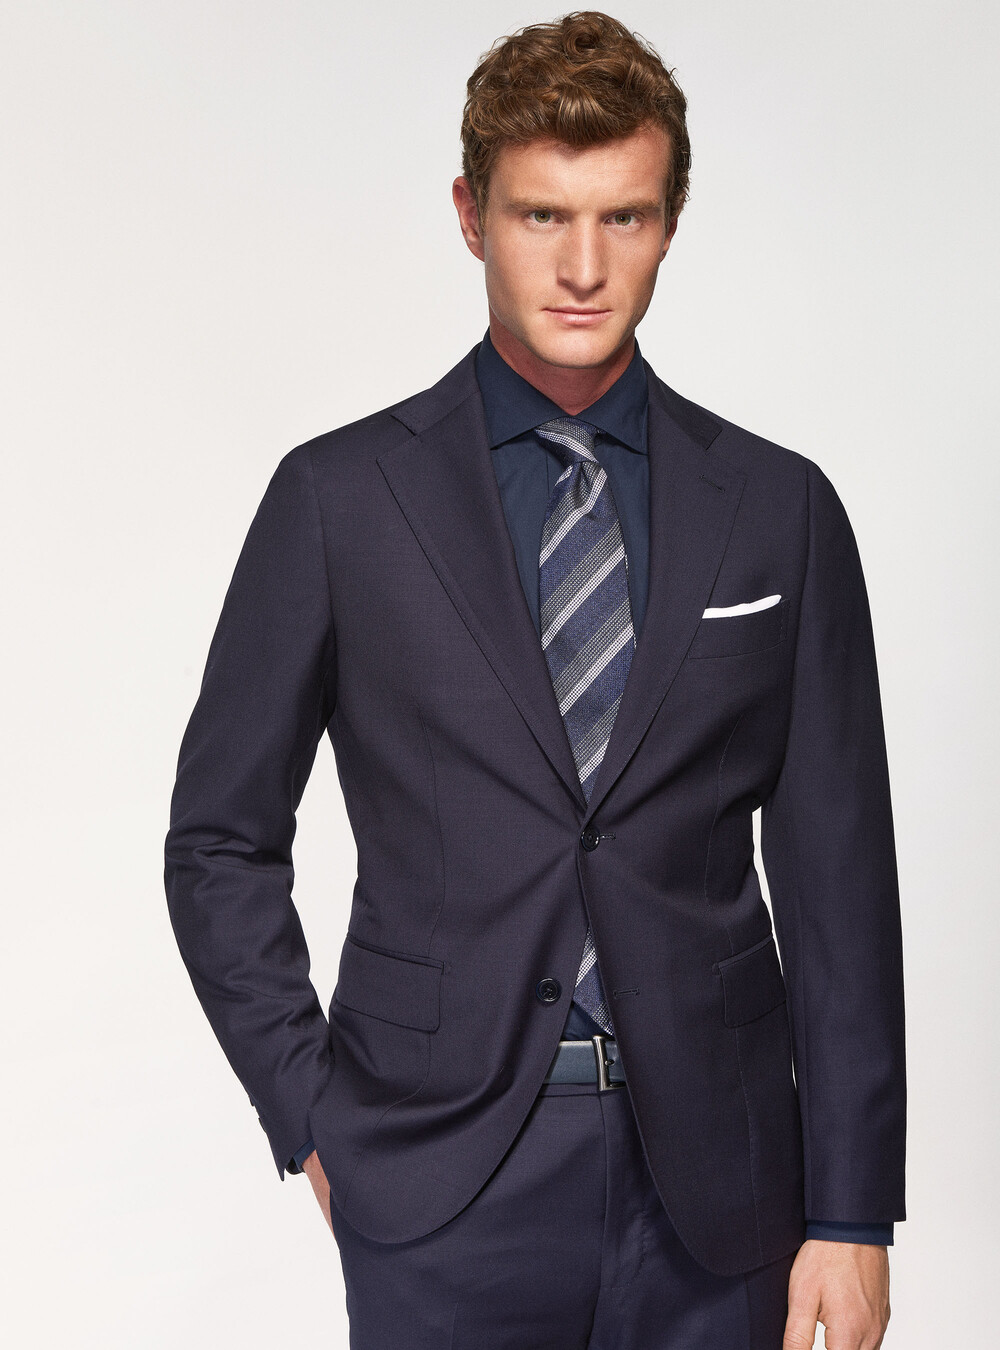 Elegant men's suits | Gutteridge